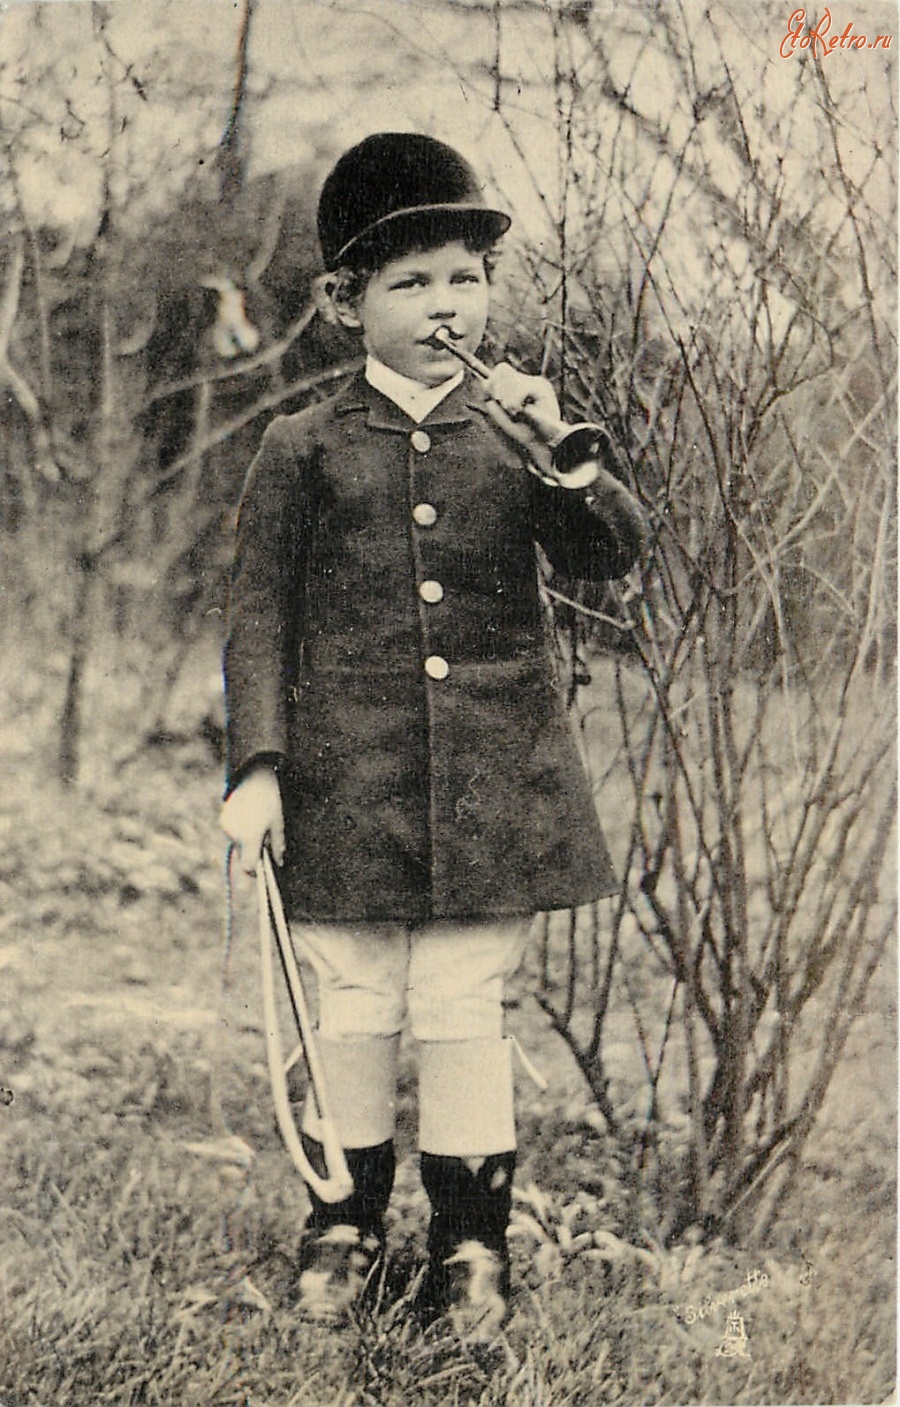 Ретро открытки - Мальчик в охотничьем костюме